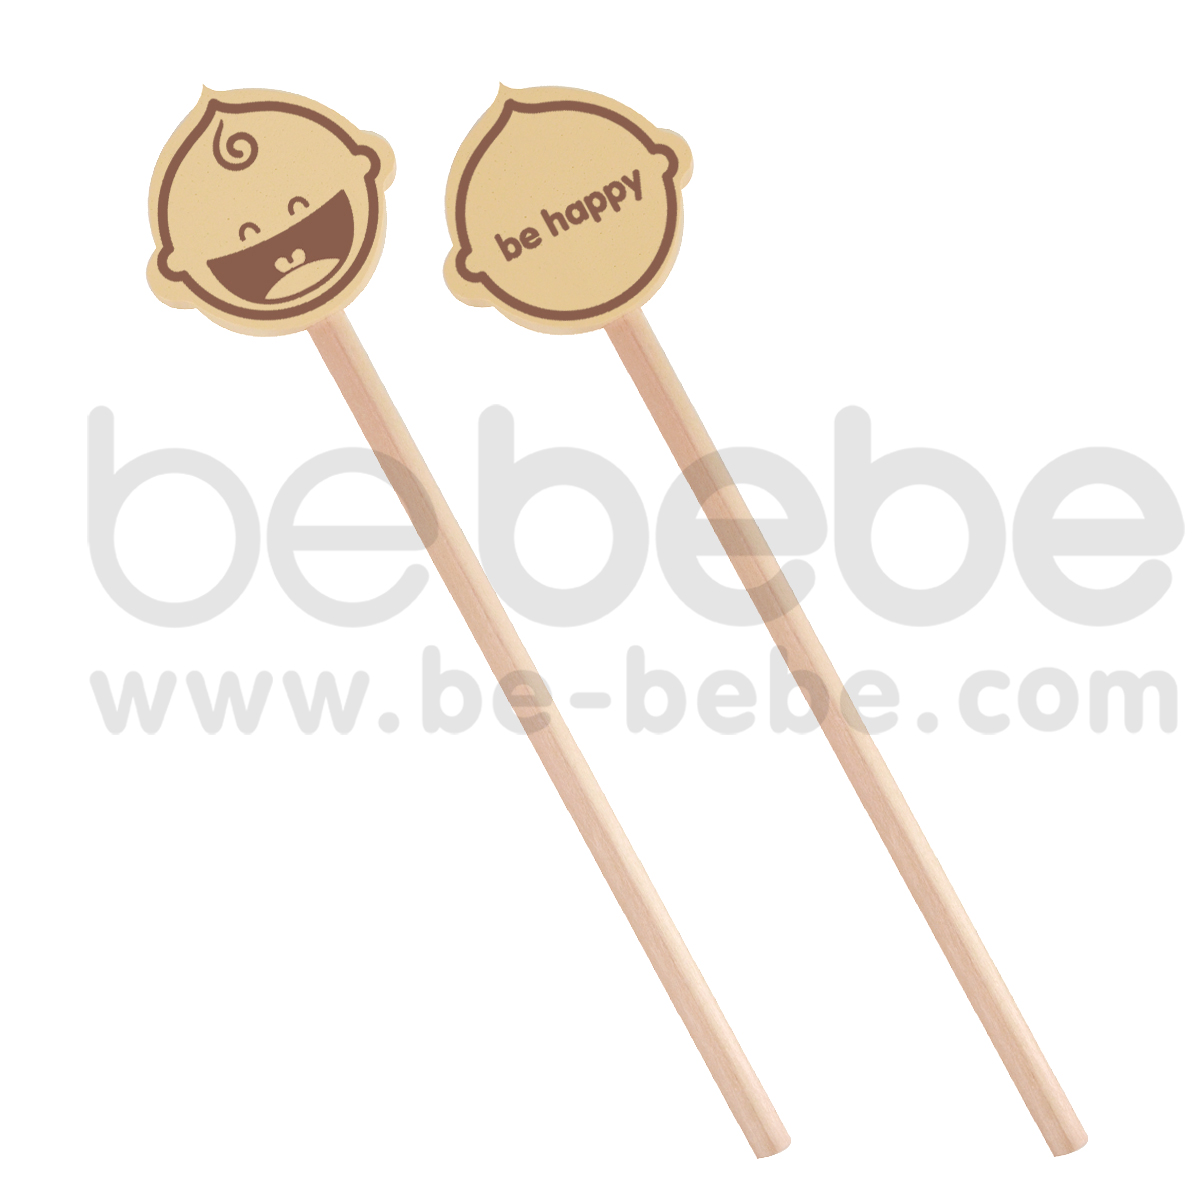 bebebe : Cream Pencil- be happy